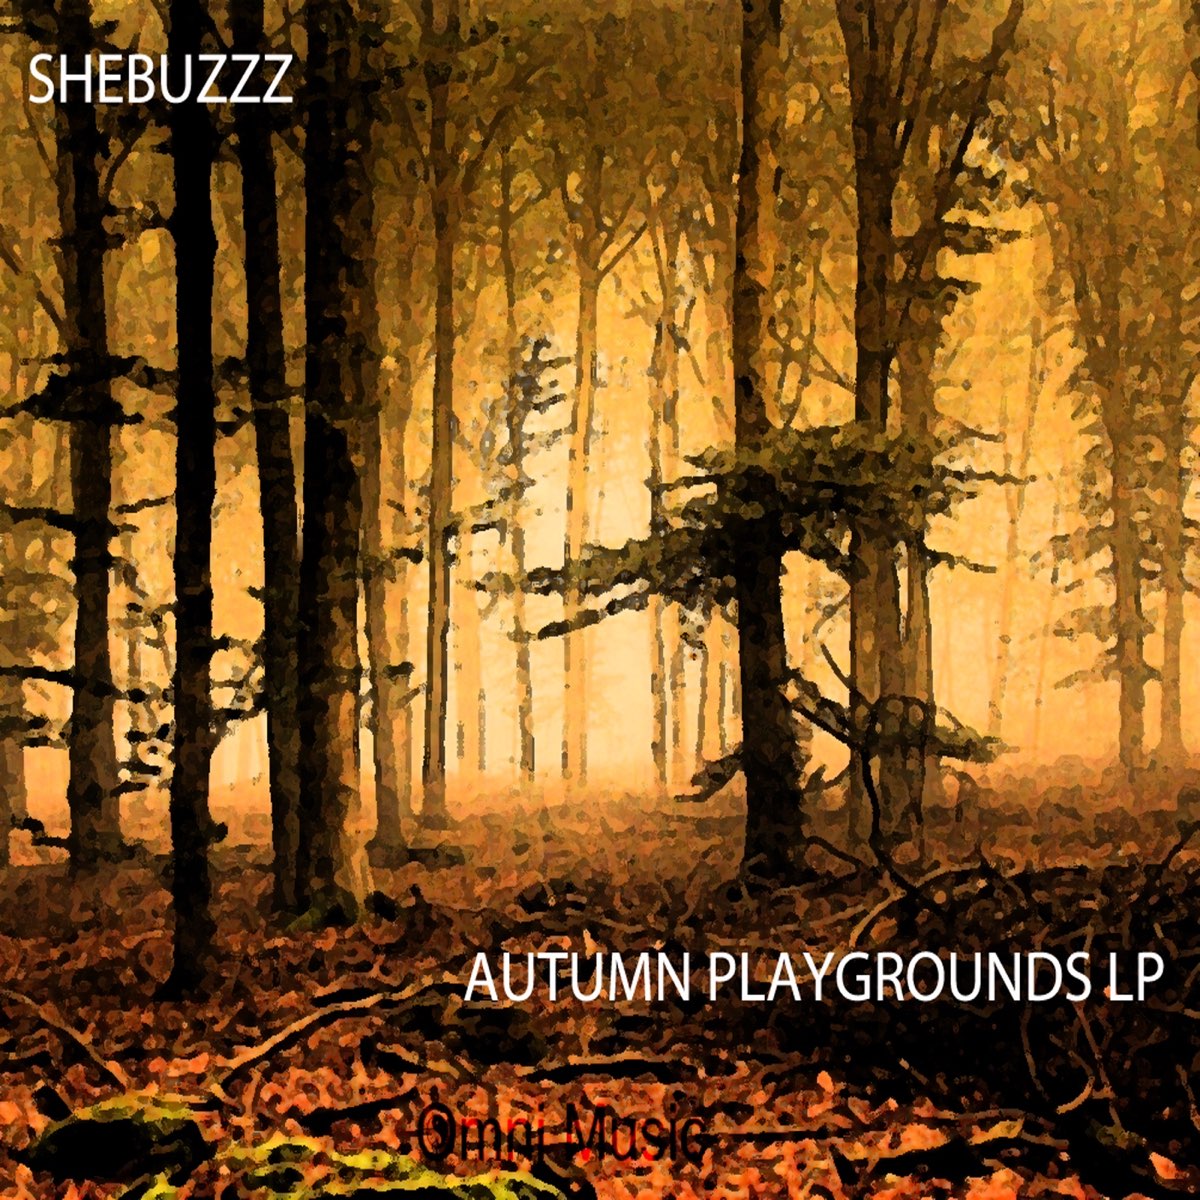 Autumn Playgrounds LP“ von Shebuzzz bei Apple Music